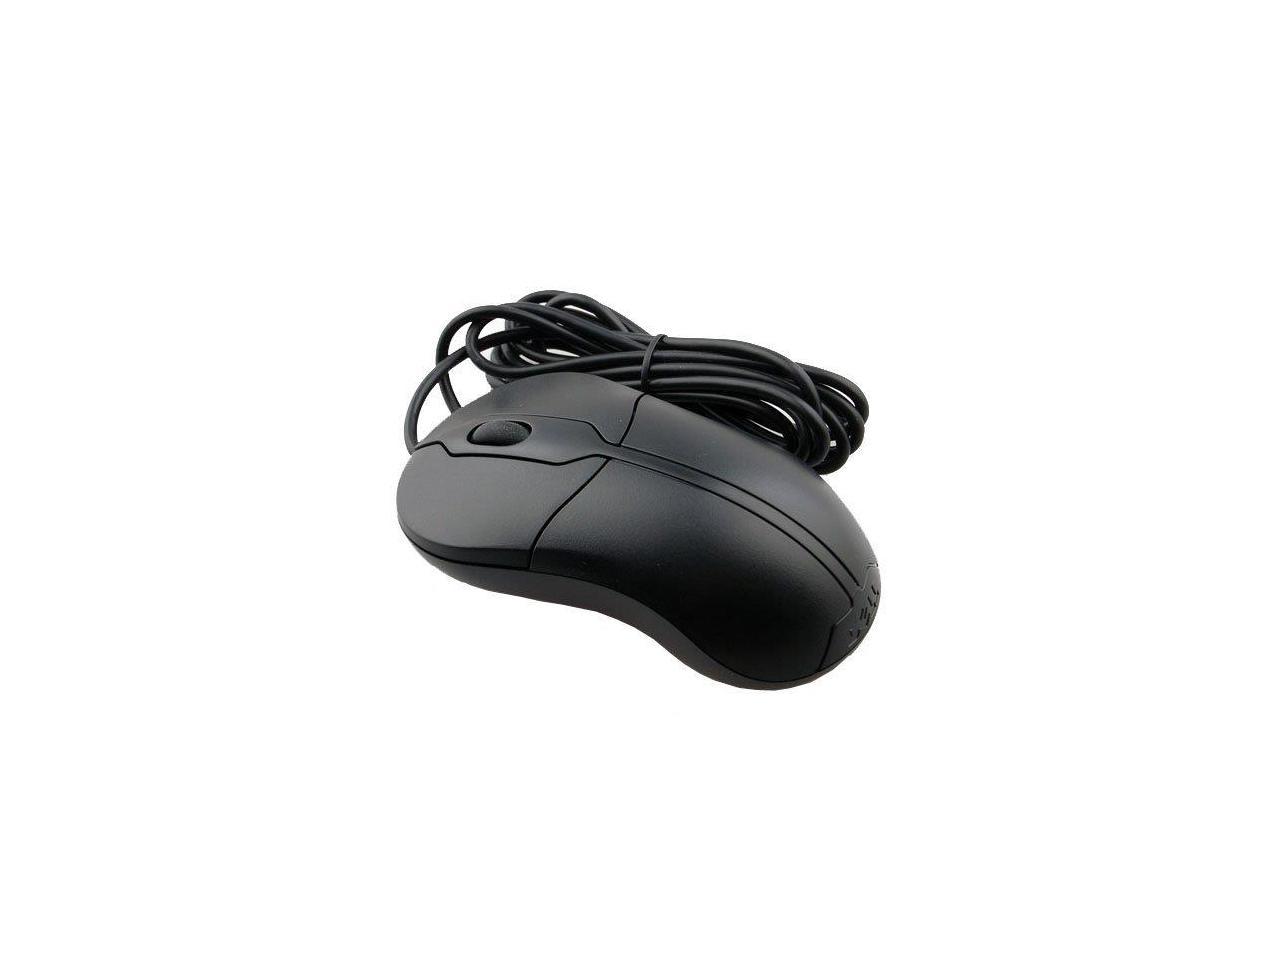 Souris filaire HP USB Optical Scroll Mouse (Noir) à prix bas